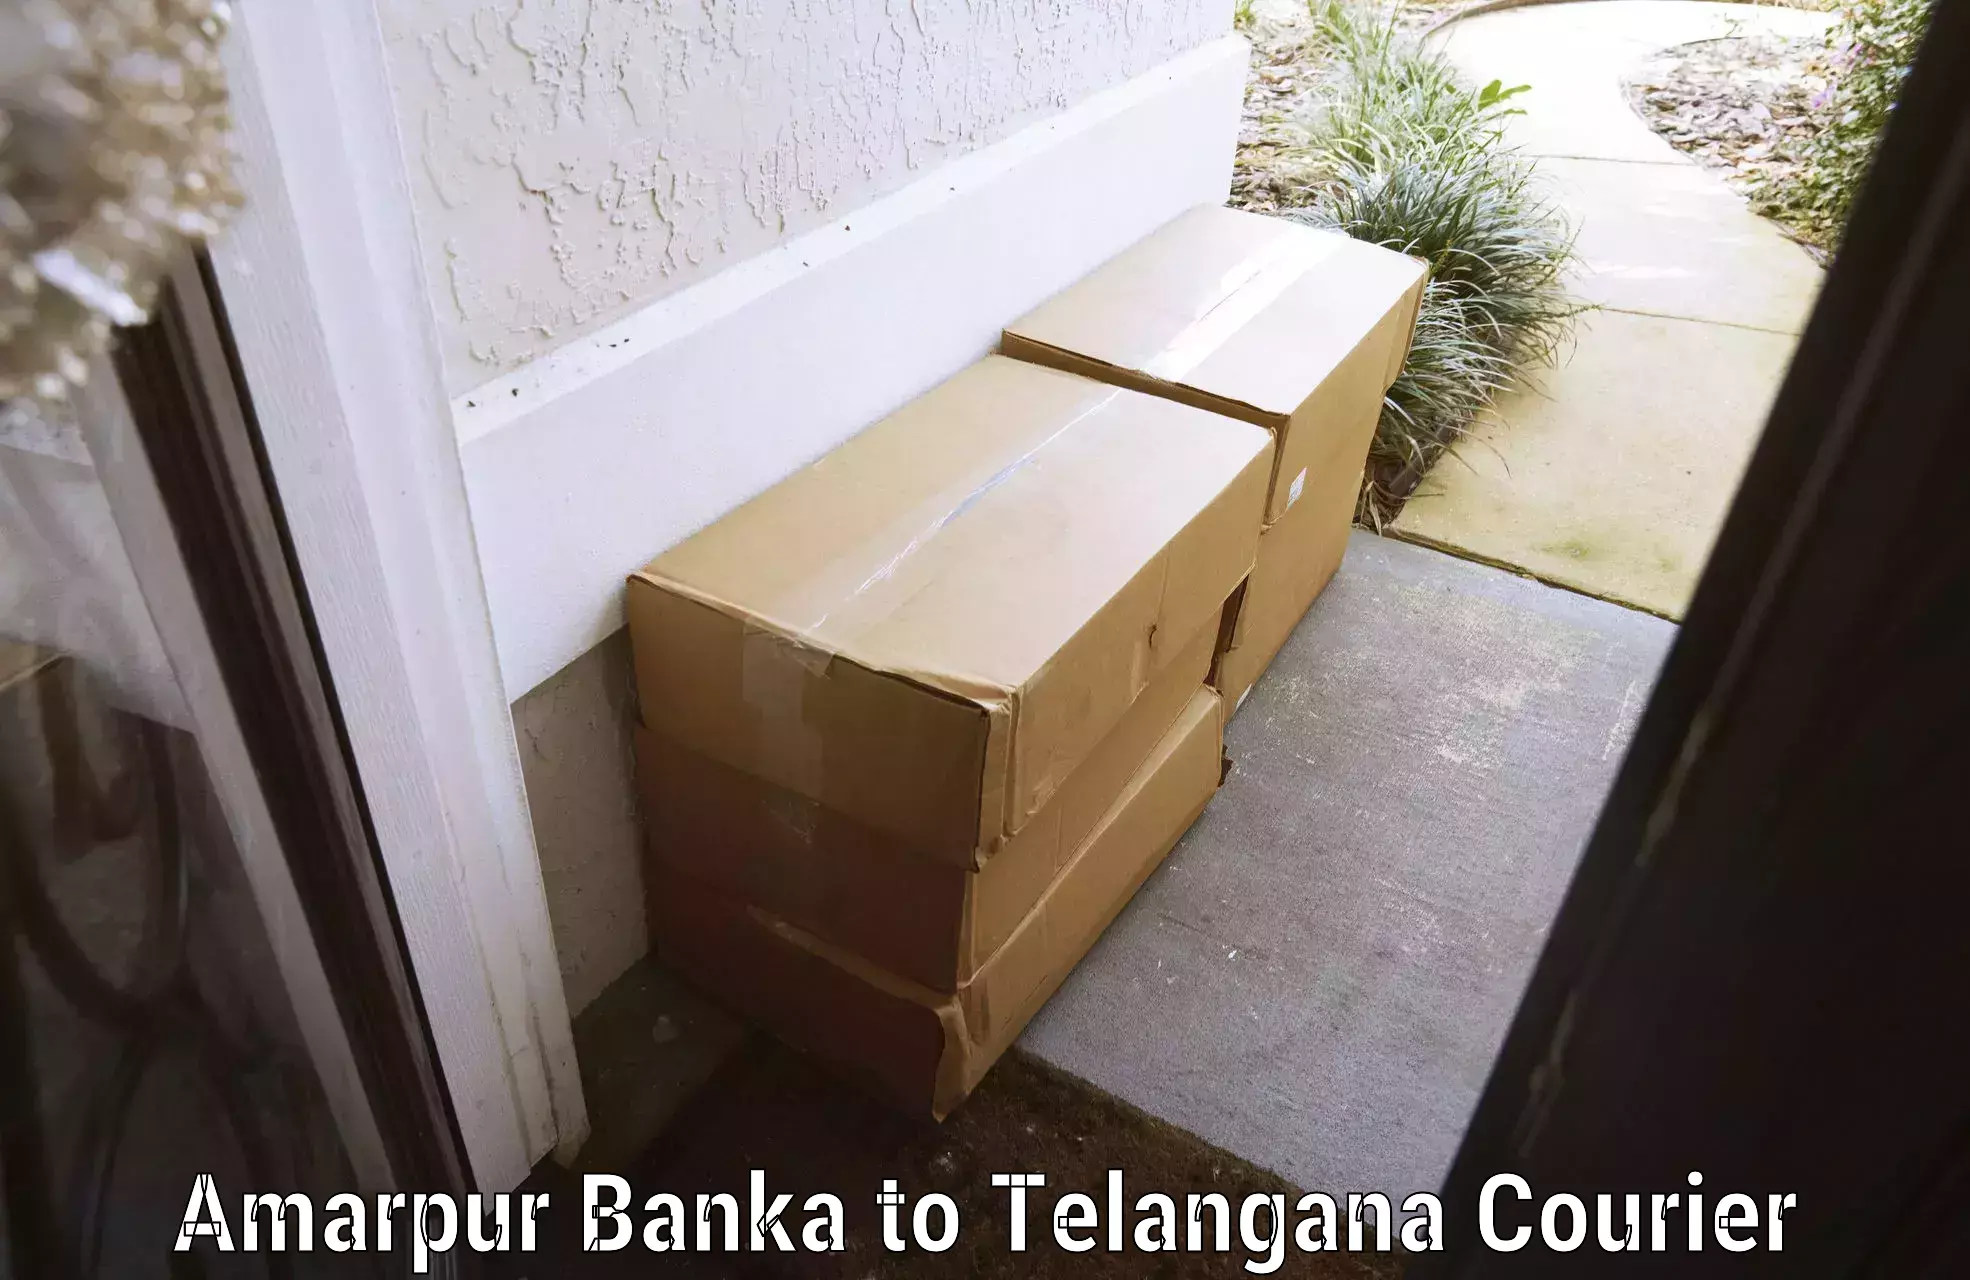 Baggage transport quote Amarpur Banka to Warangal